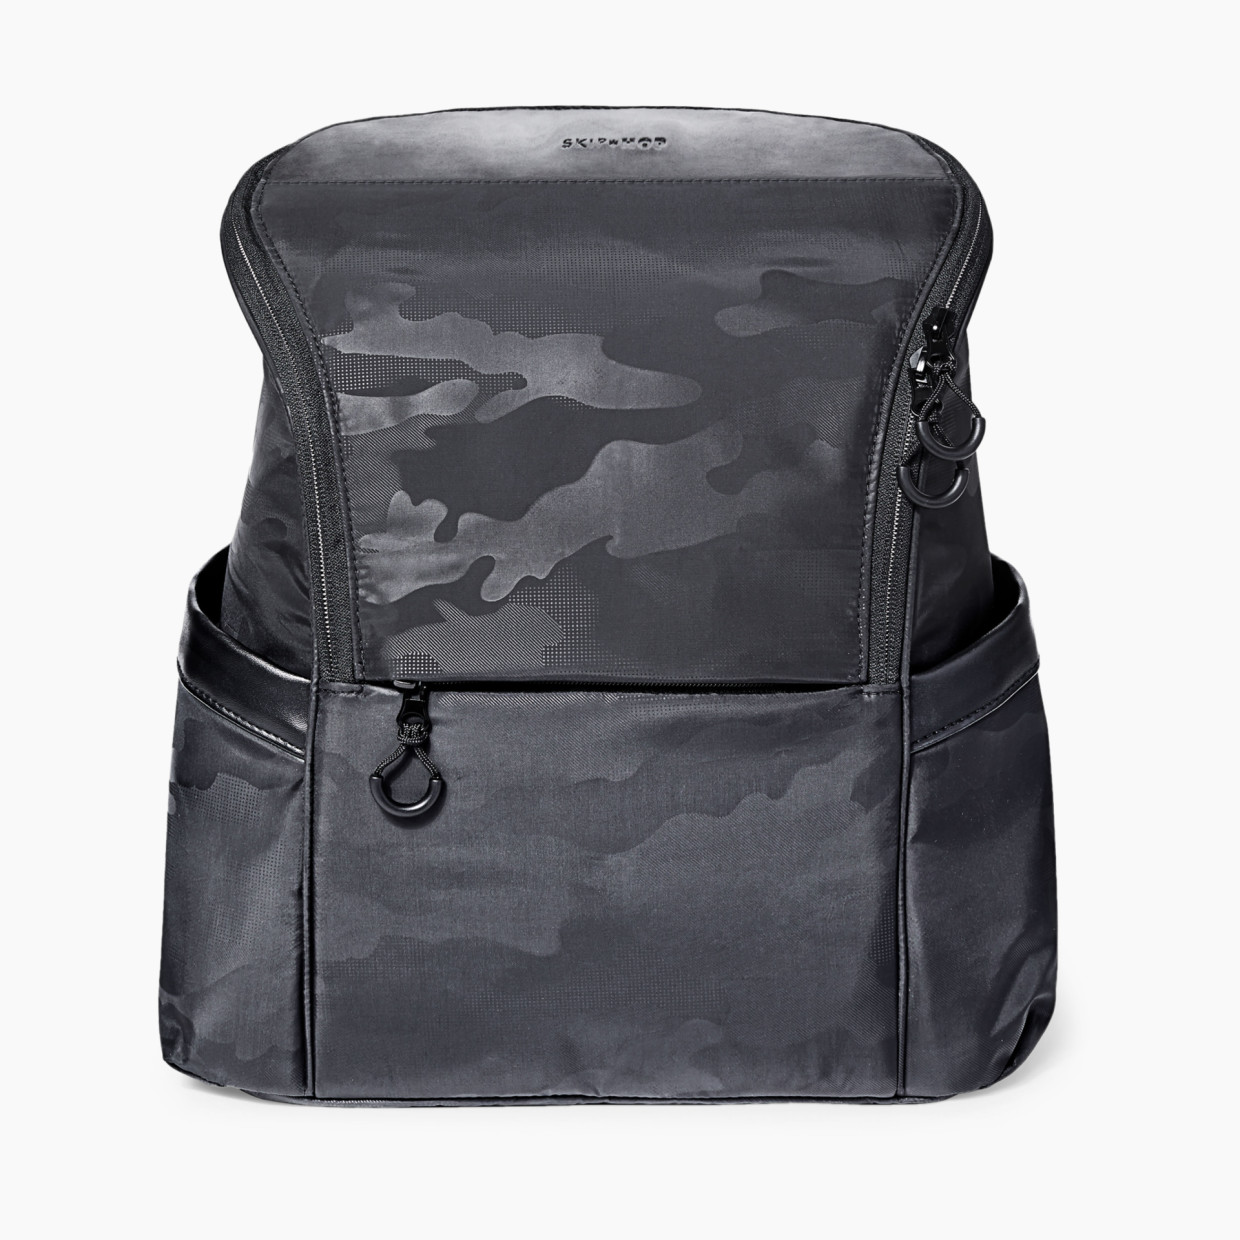 Skip Hop Paxwell Diaper Backpack - Black/Camo.